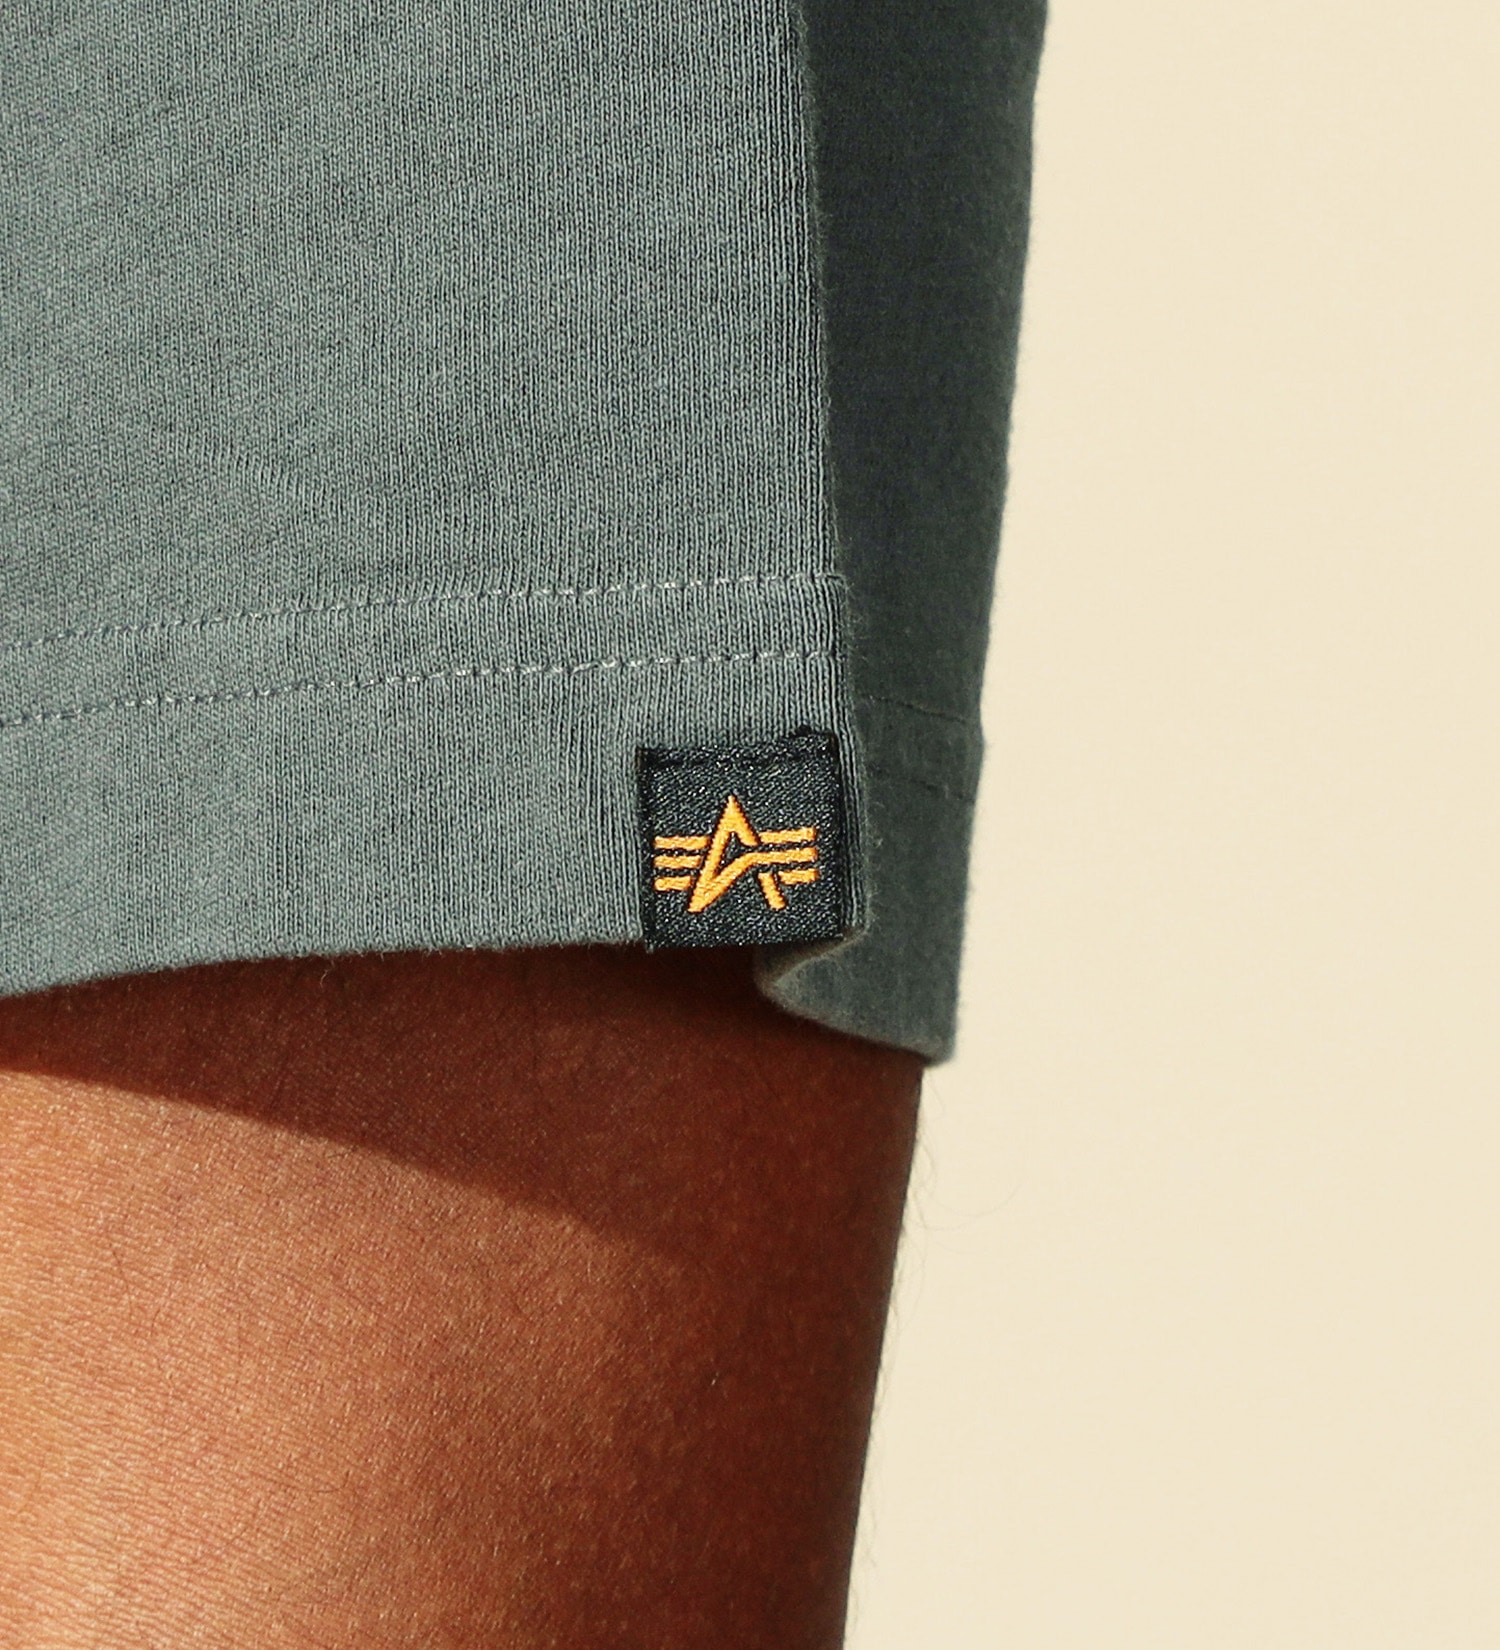 ALPHA(アルファ)のDRESSCODE バックプリントTシャツ 半袖|トップス/Tシャツ/カットソー/メンズ|グレー